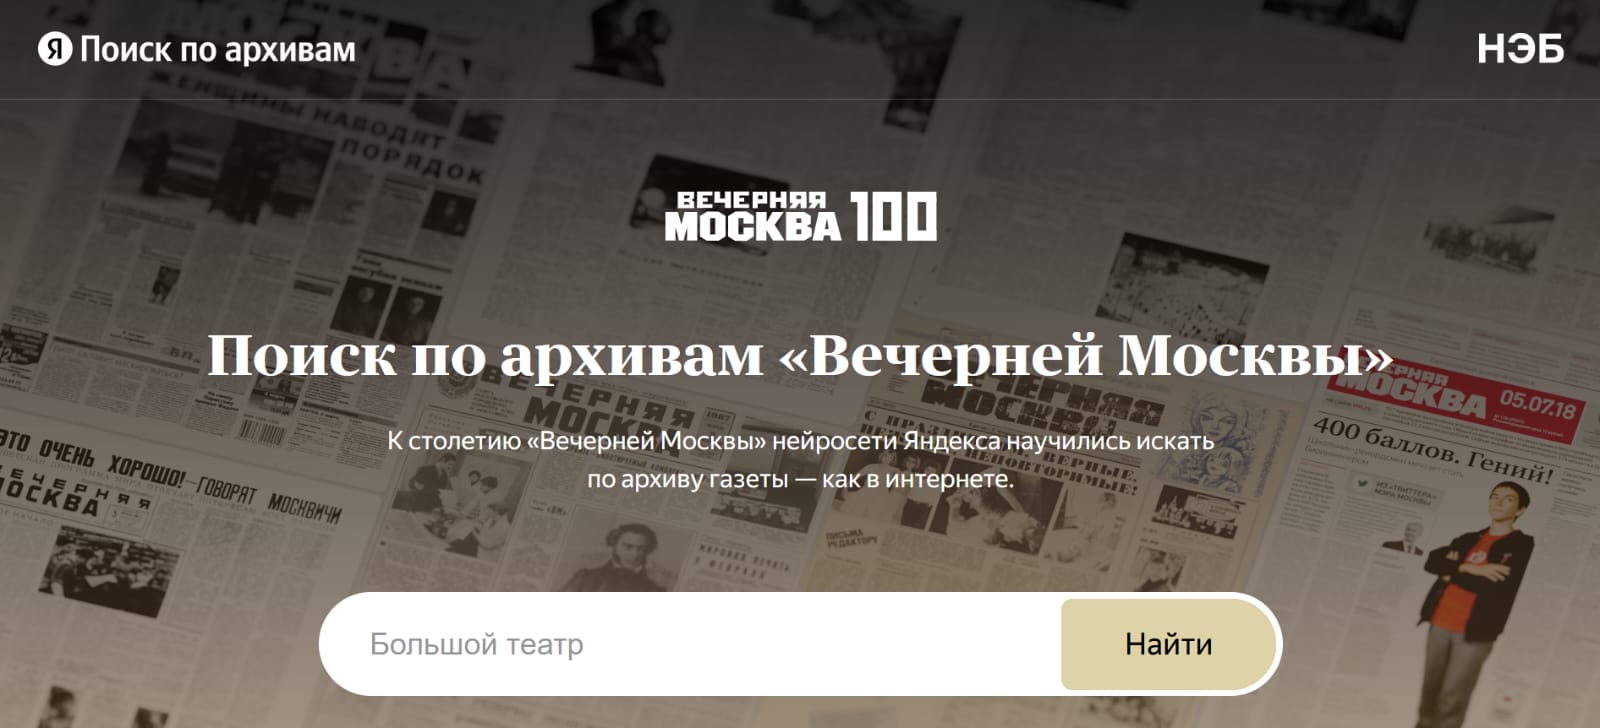 Поиск по архивам «Вечерней Москвы»: проект НЭБ и сервиса Яндекса «Поиск по архивам»